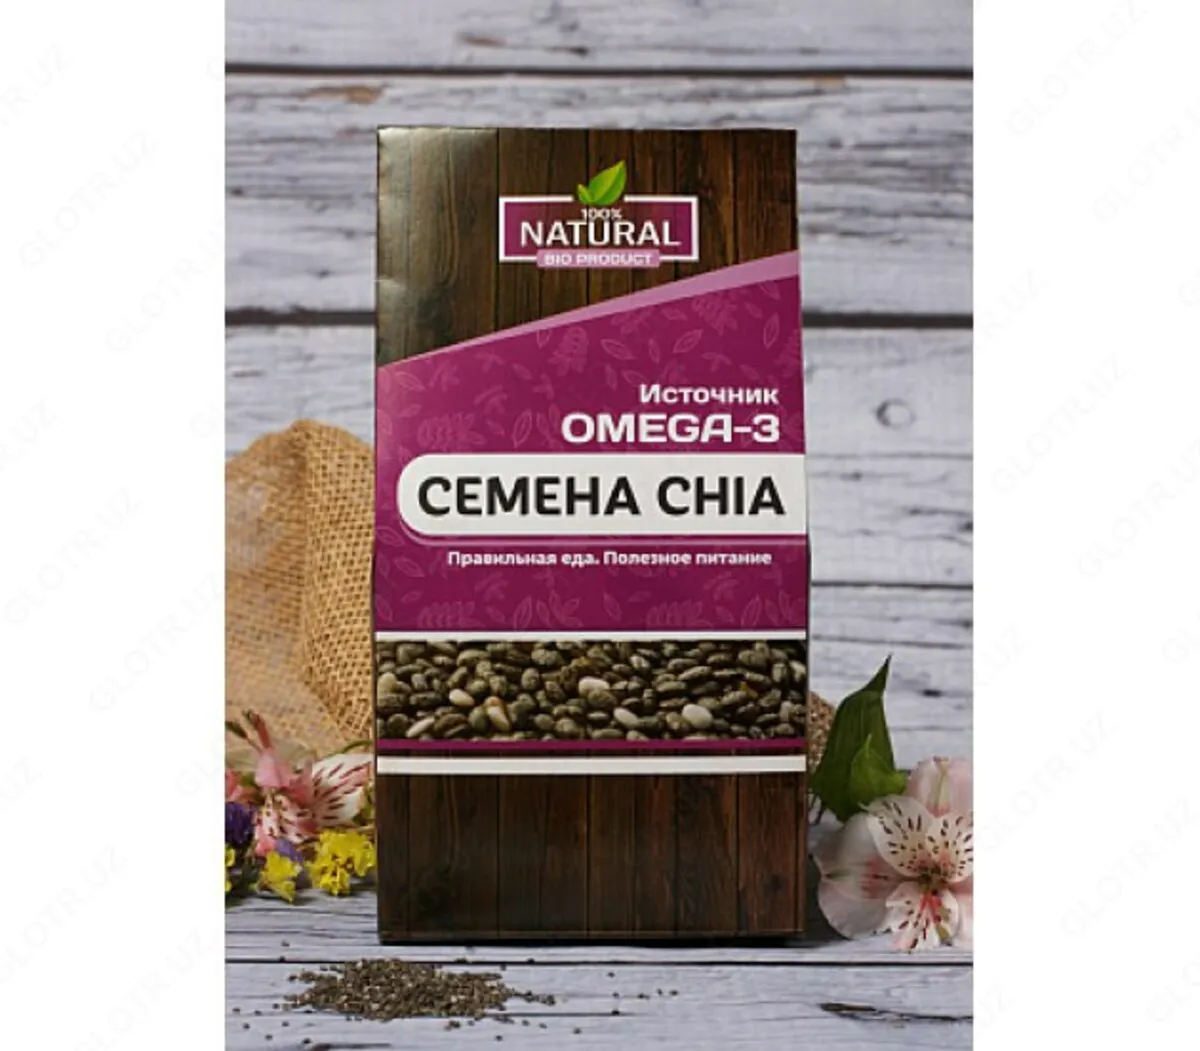 Omega 3 Chia urug'larining tabiiy manbai#1